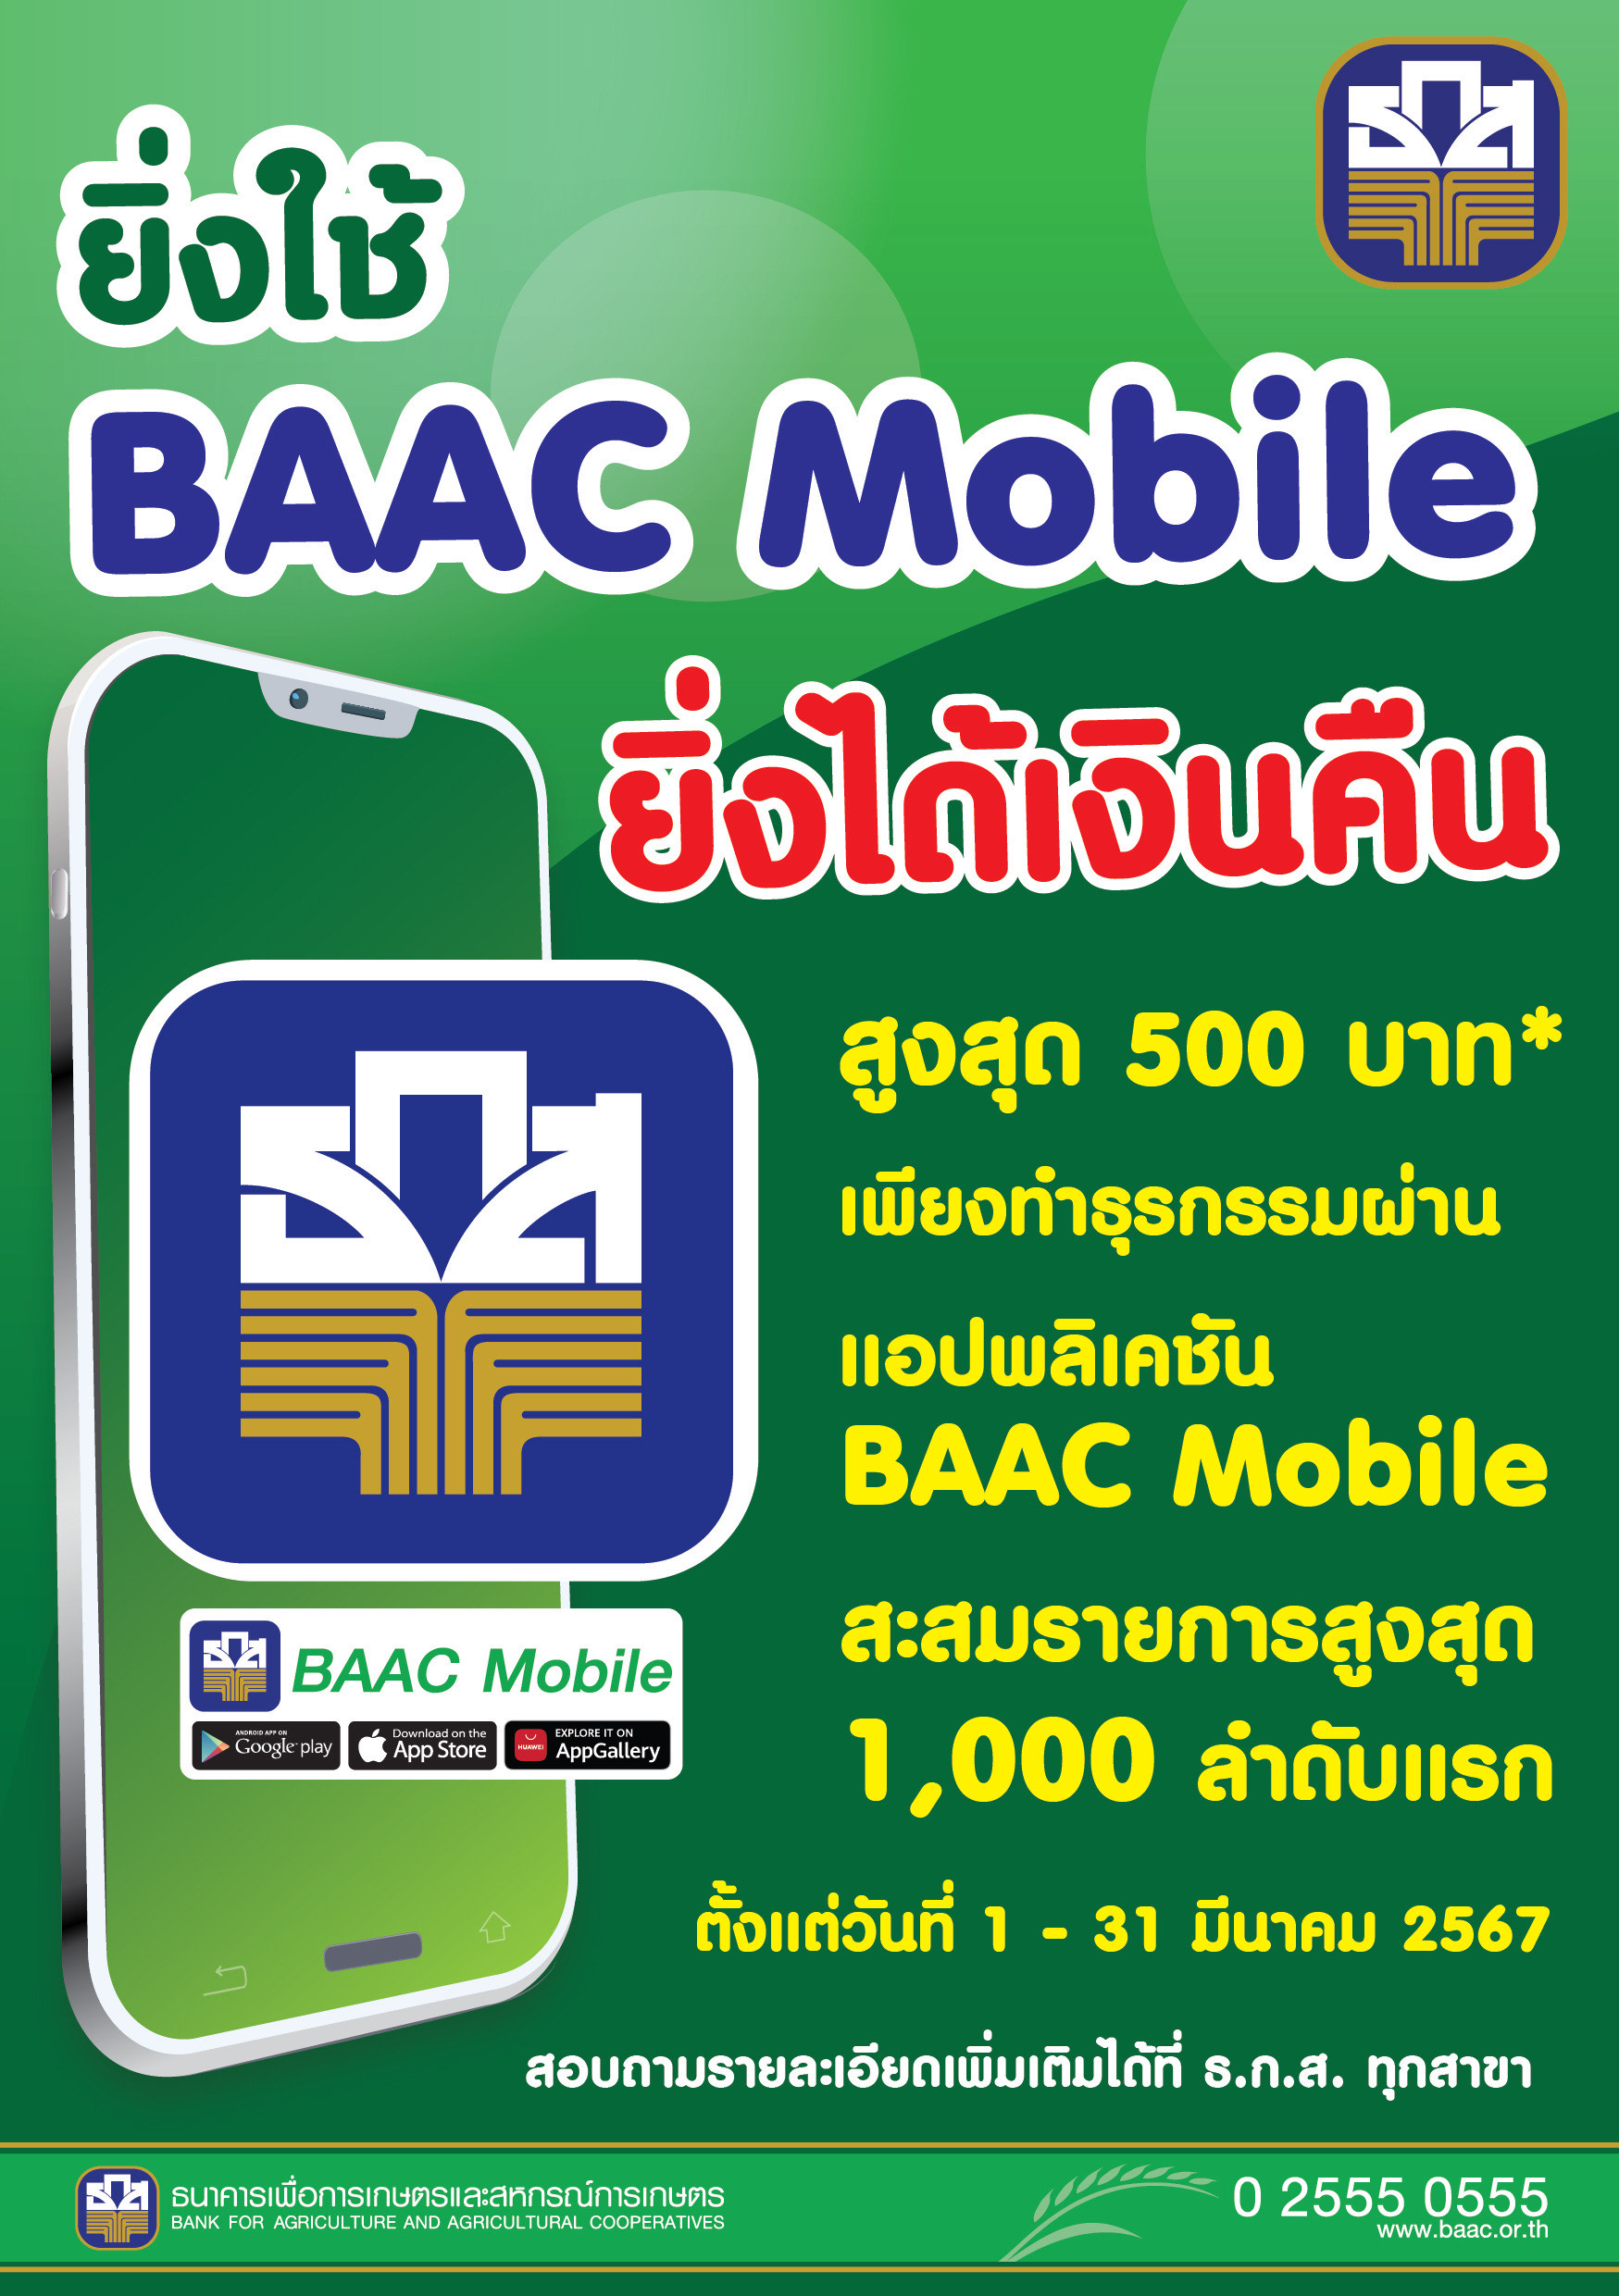 ธ.ก.ส. ชวนใช้ BAAC Mobile ยิ่งใช้ ยิ่งได้เงินคืนสูงสุด 500 บาท